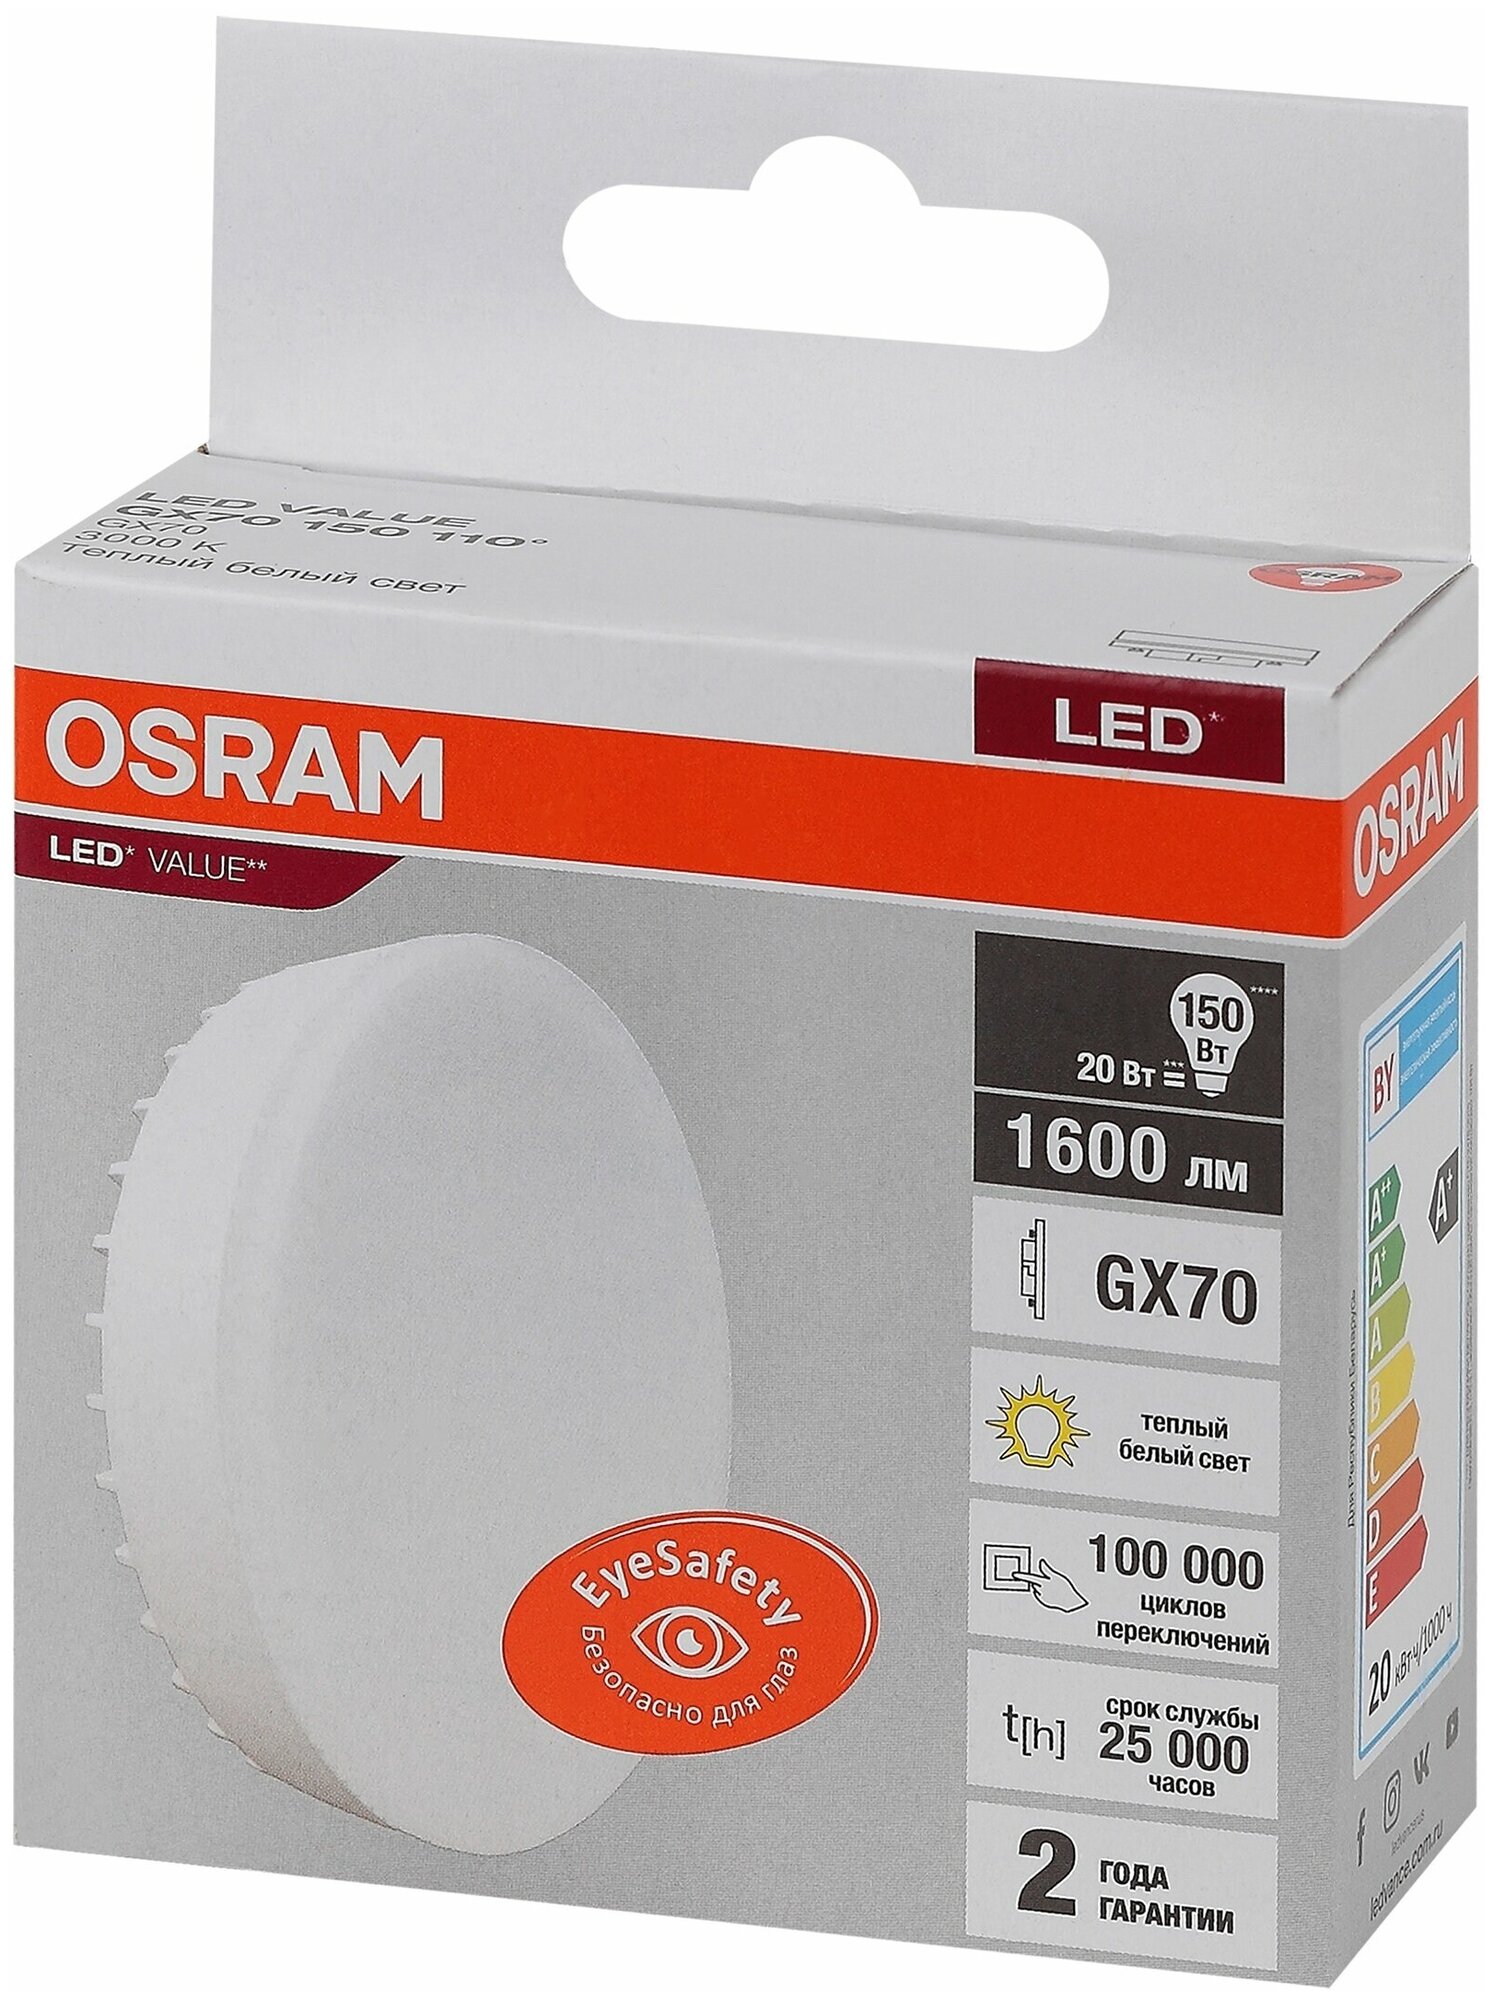 Светодиодная лампа Ledvance-osram OSRAM LV GX70 150 20SW/865 230V 1600lm GX70 D109x42